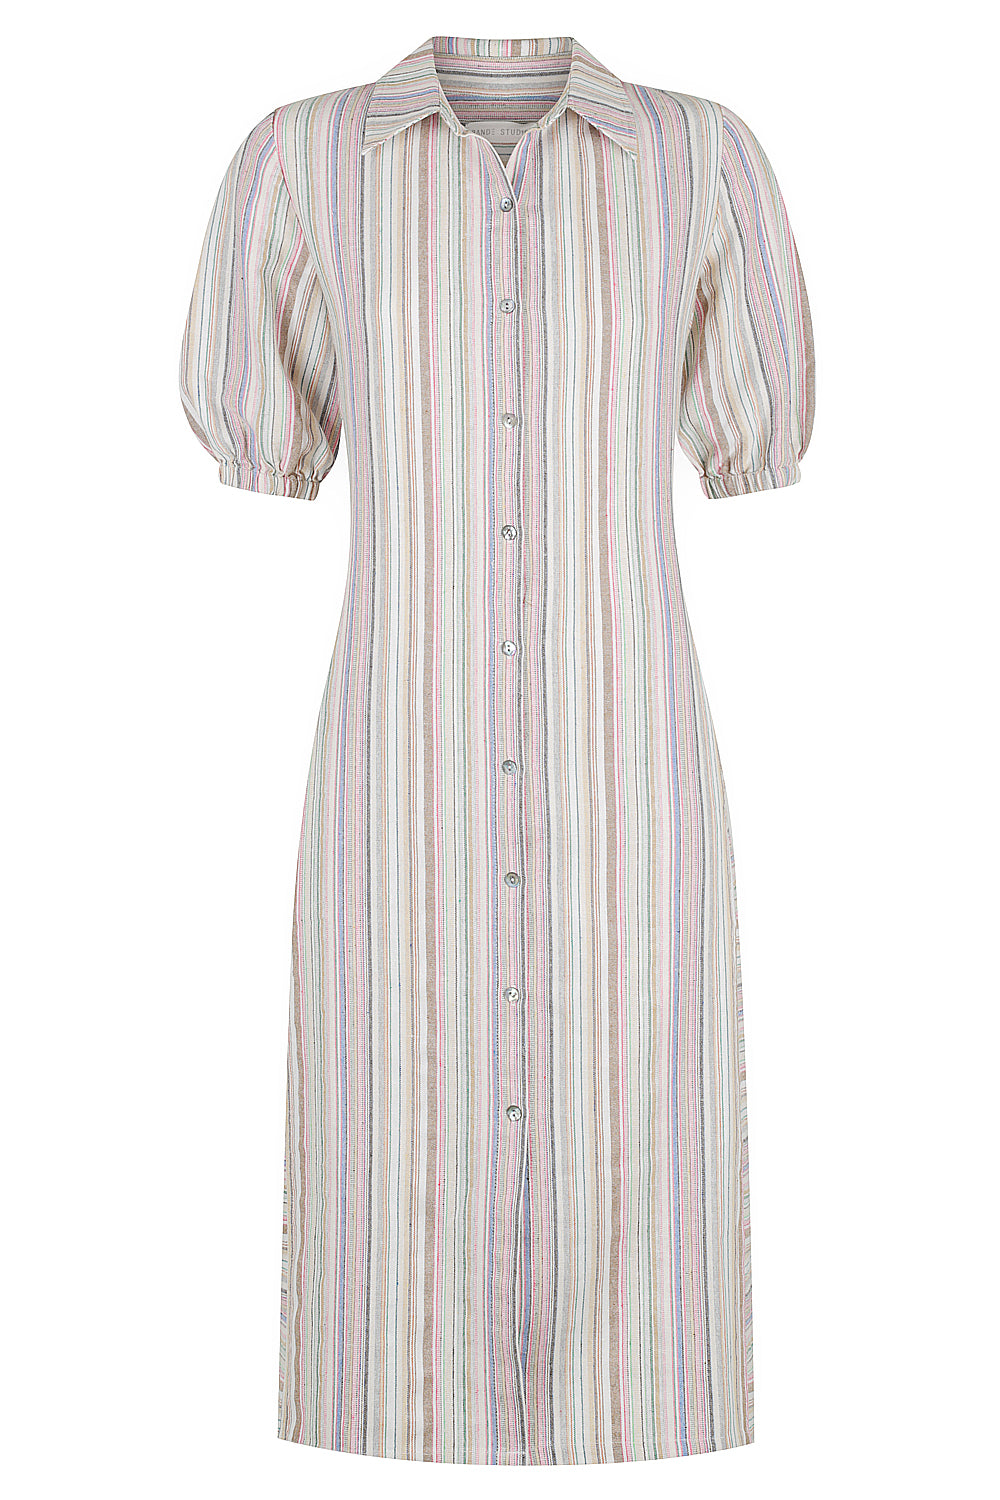 Oceania Stripe Linen Shirt Dress